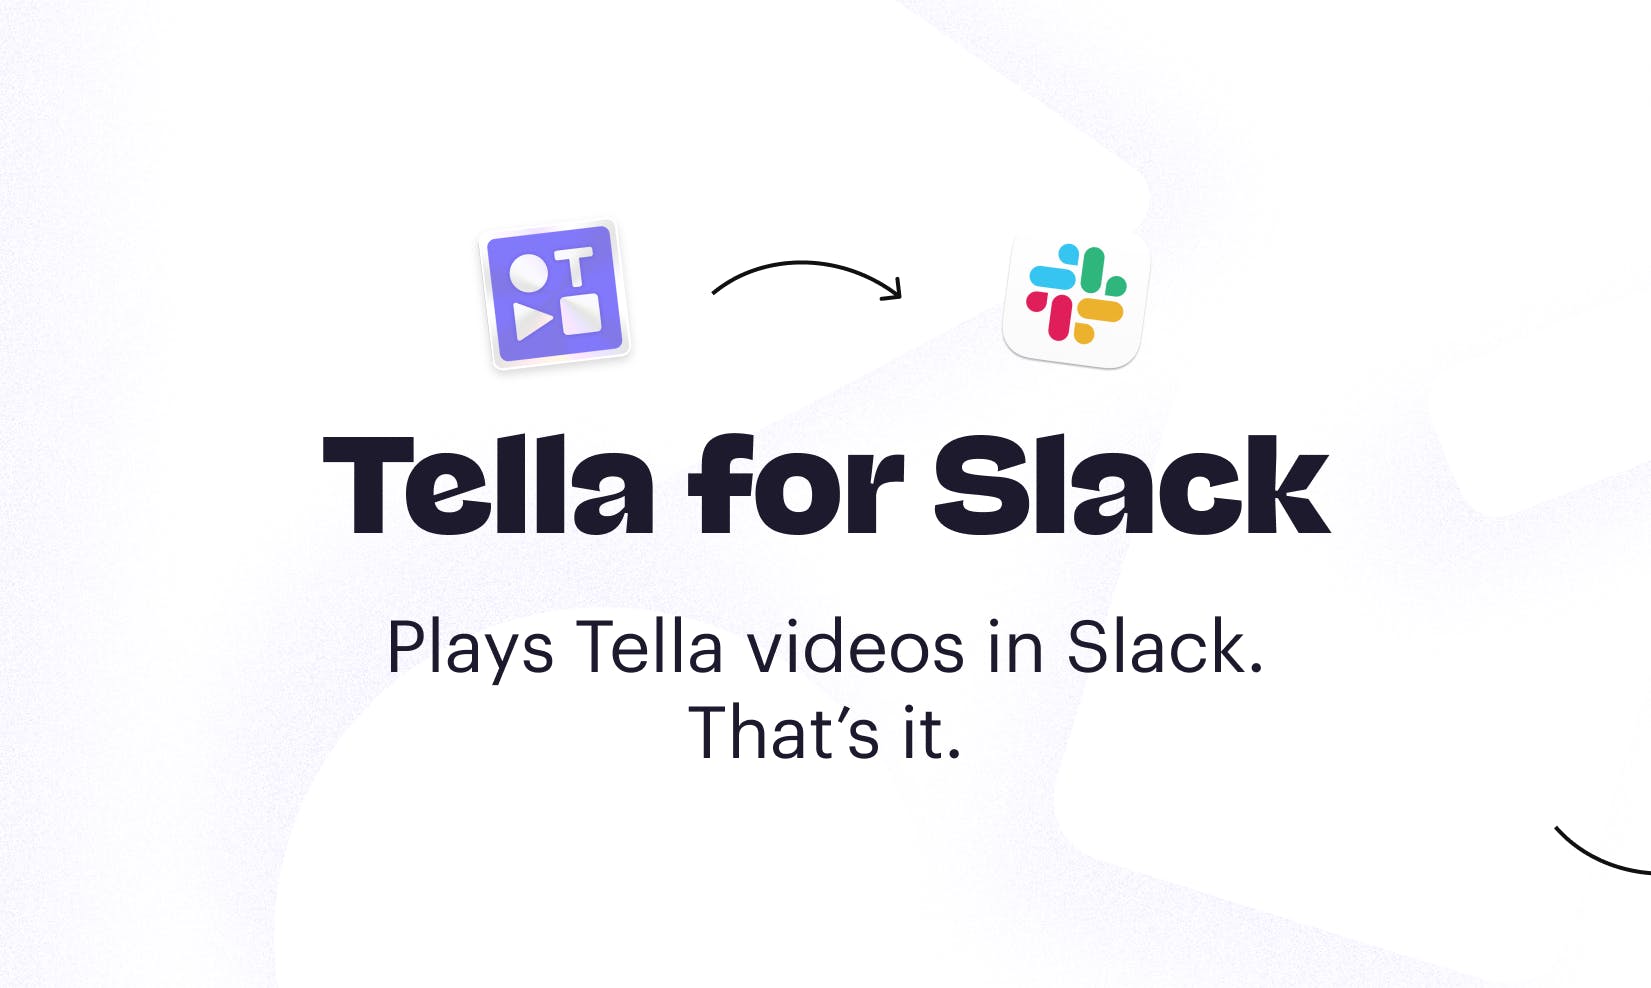 Tella for Slack media 2